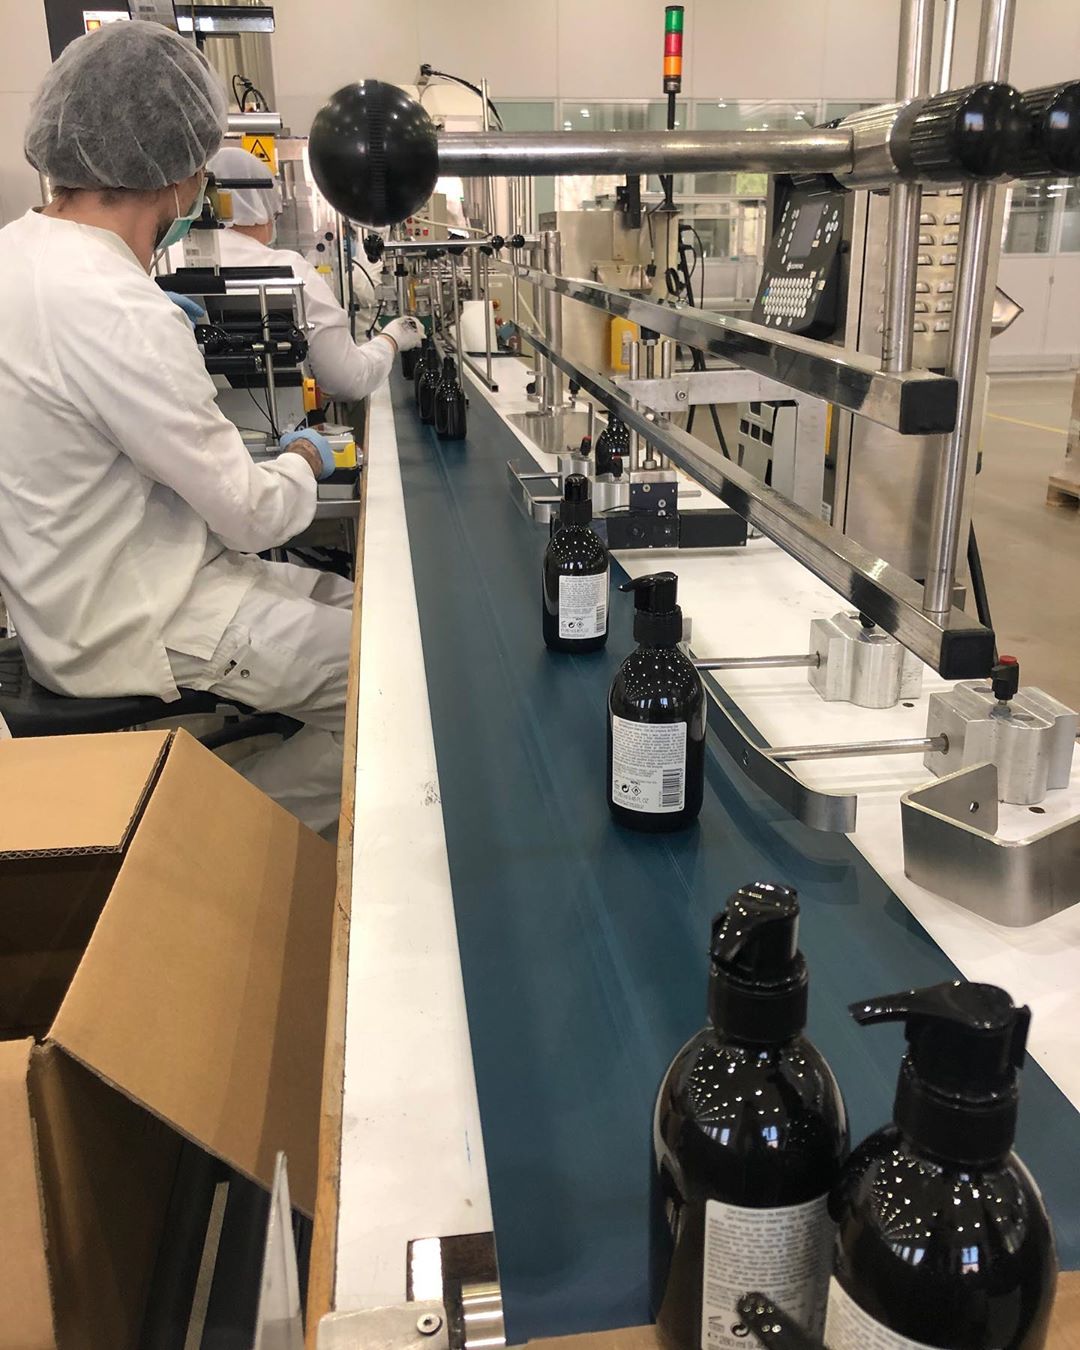 shakira usa fábrica de sus perfumes en hacer alcohol gel